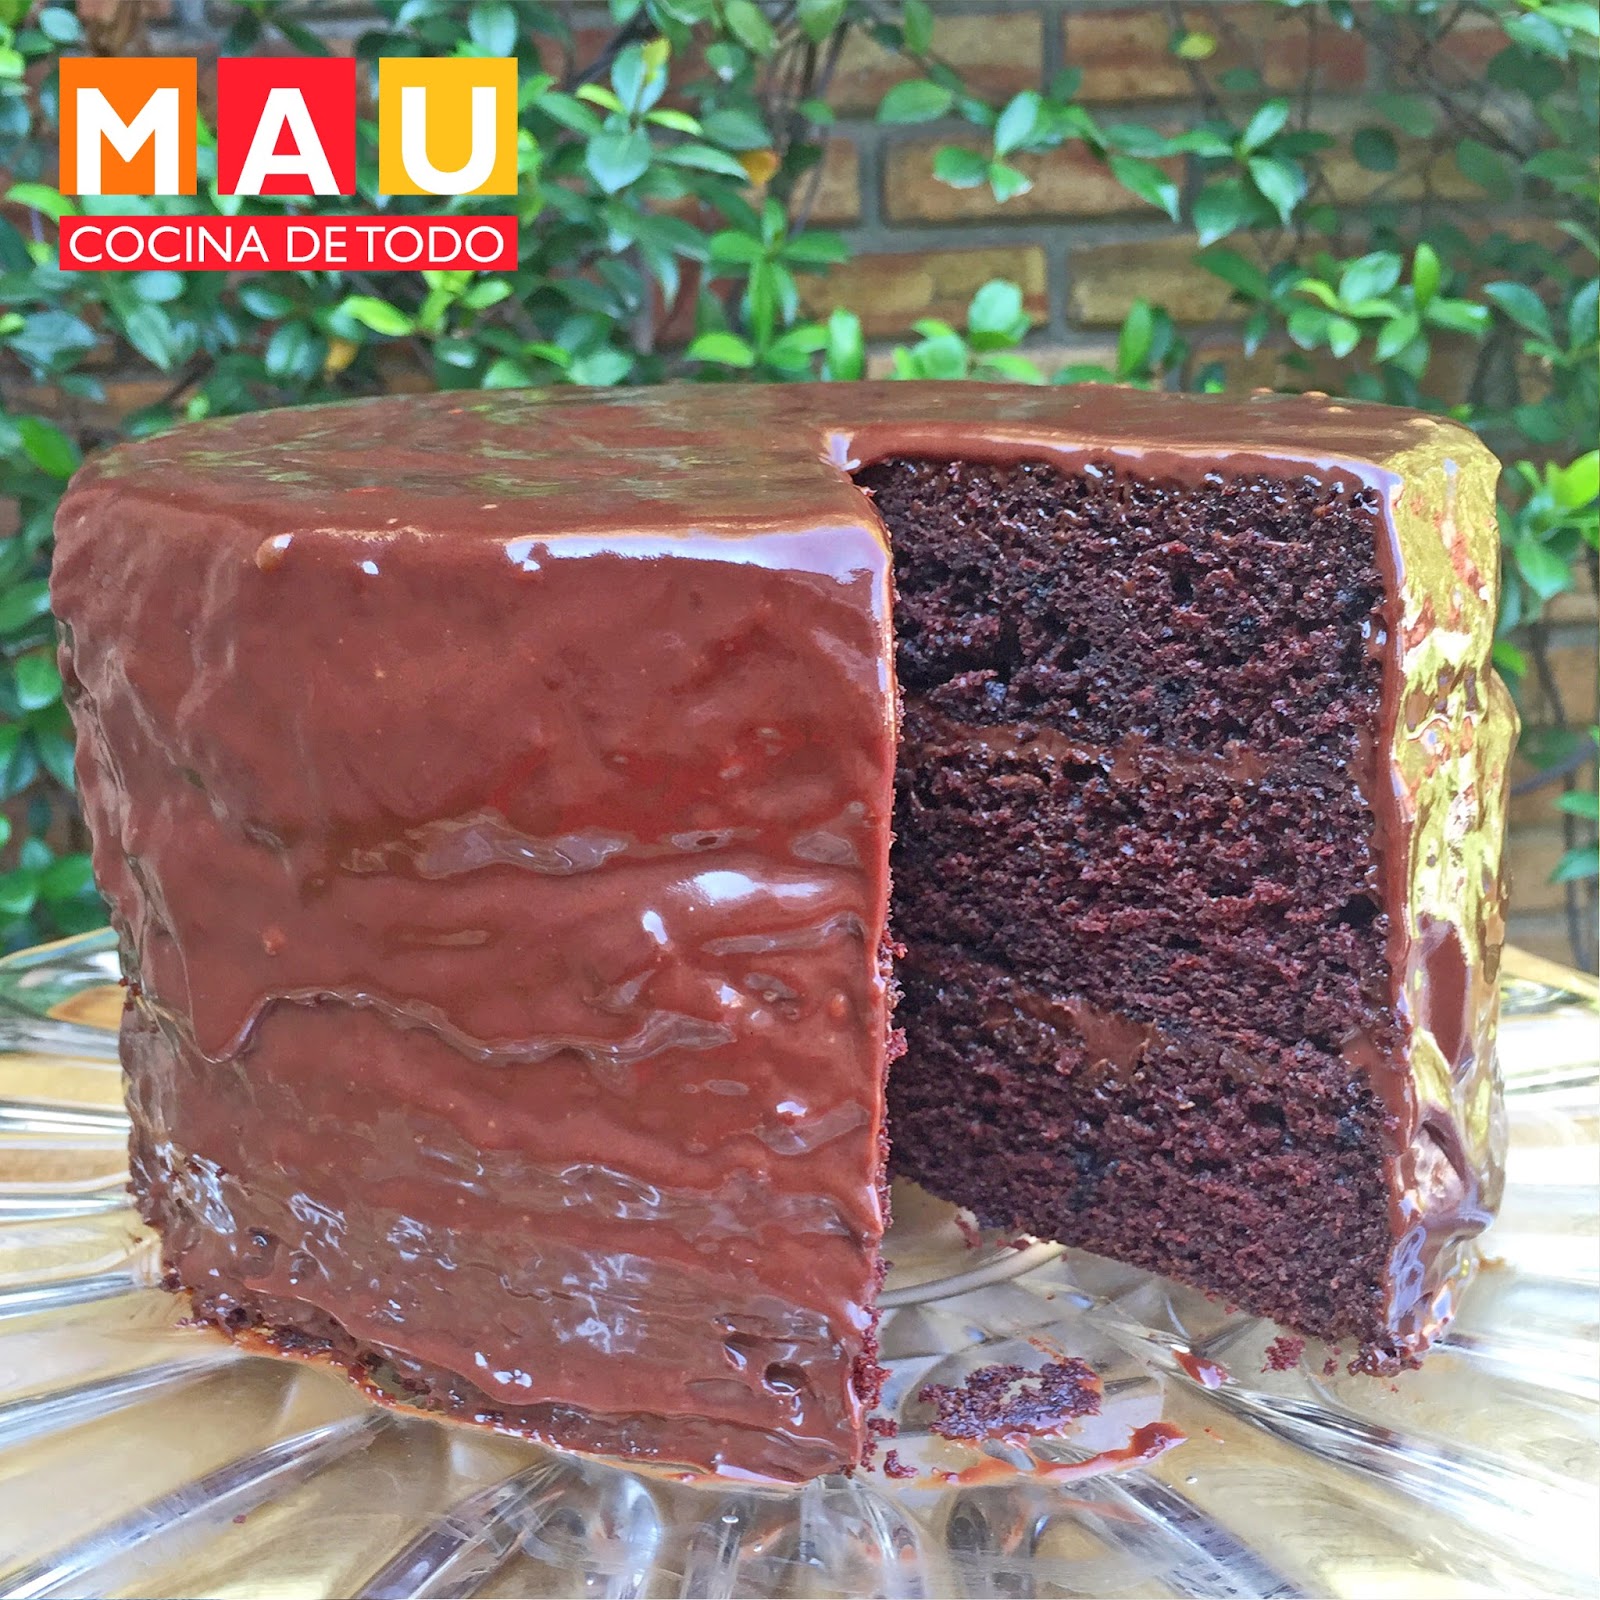 Mau Cocina de Todo: Pastel de Chocolate Estilo Matilda